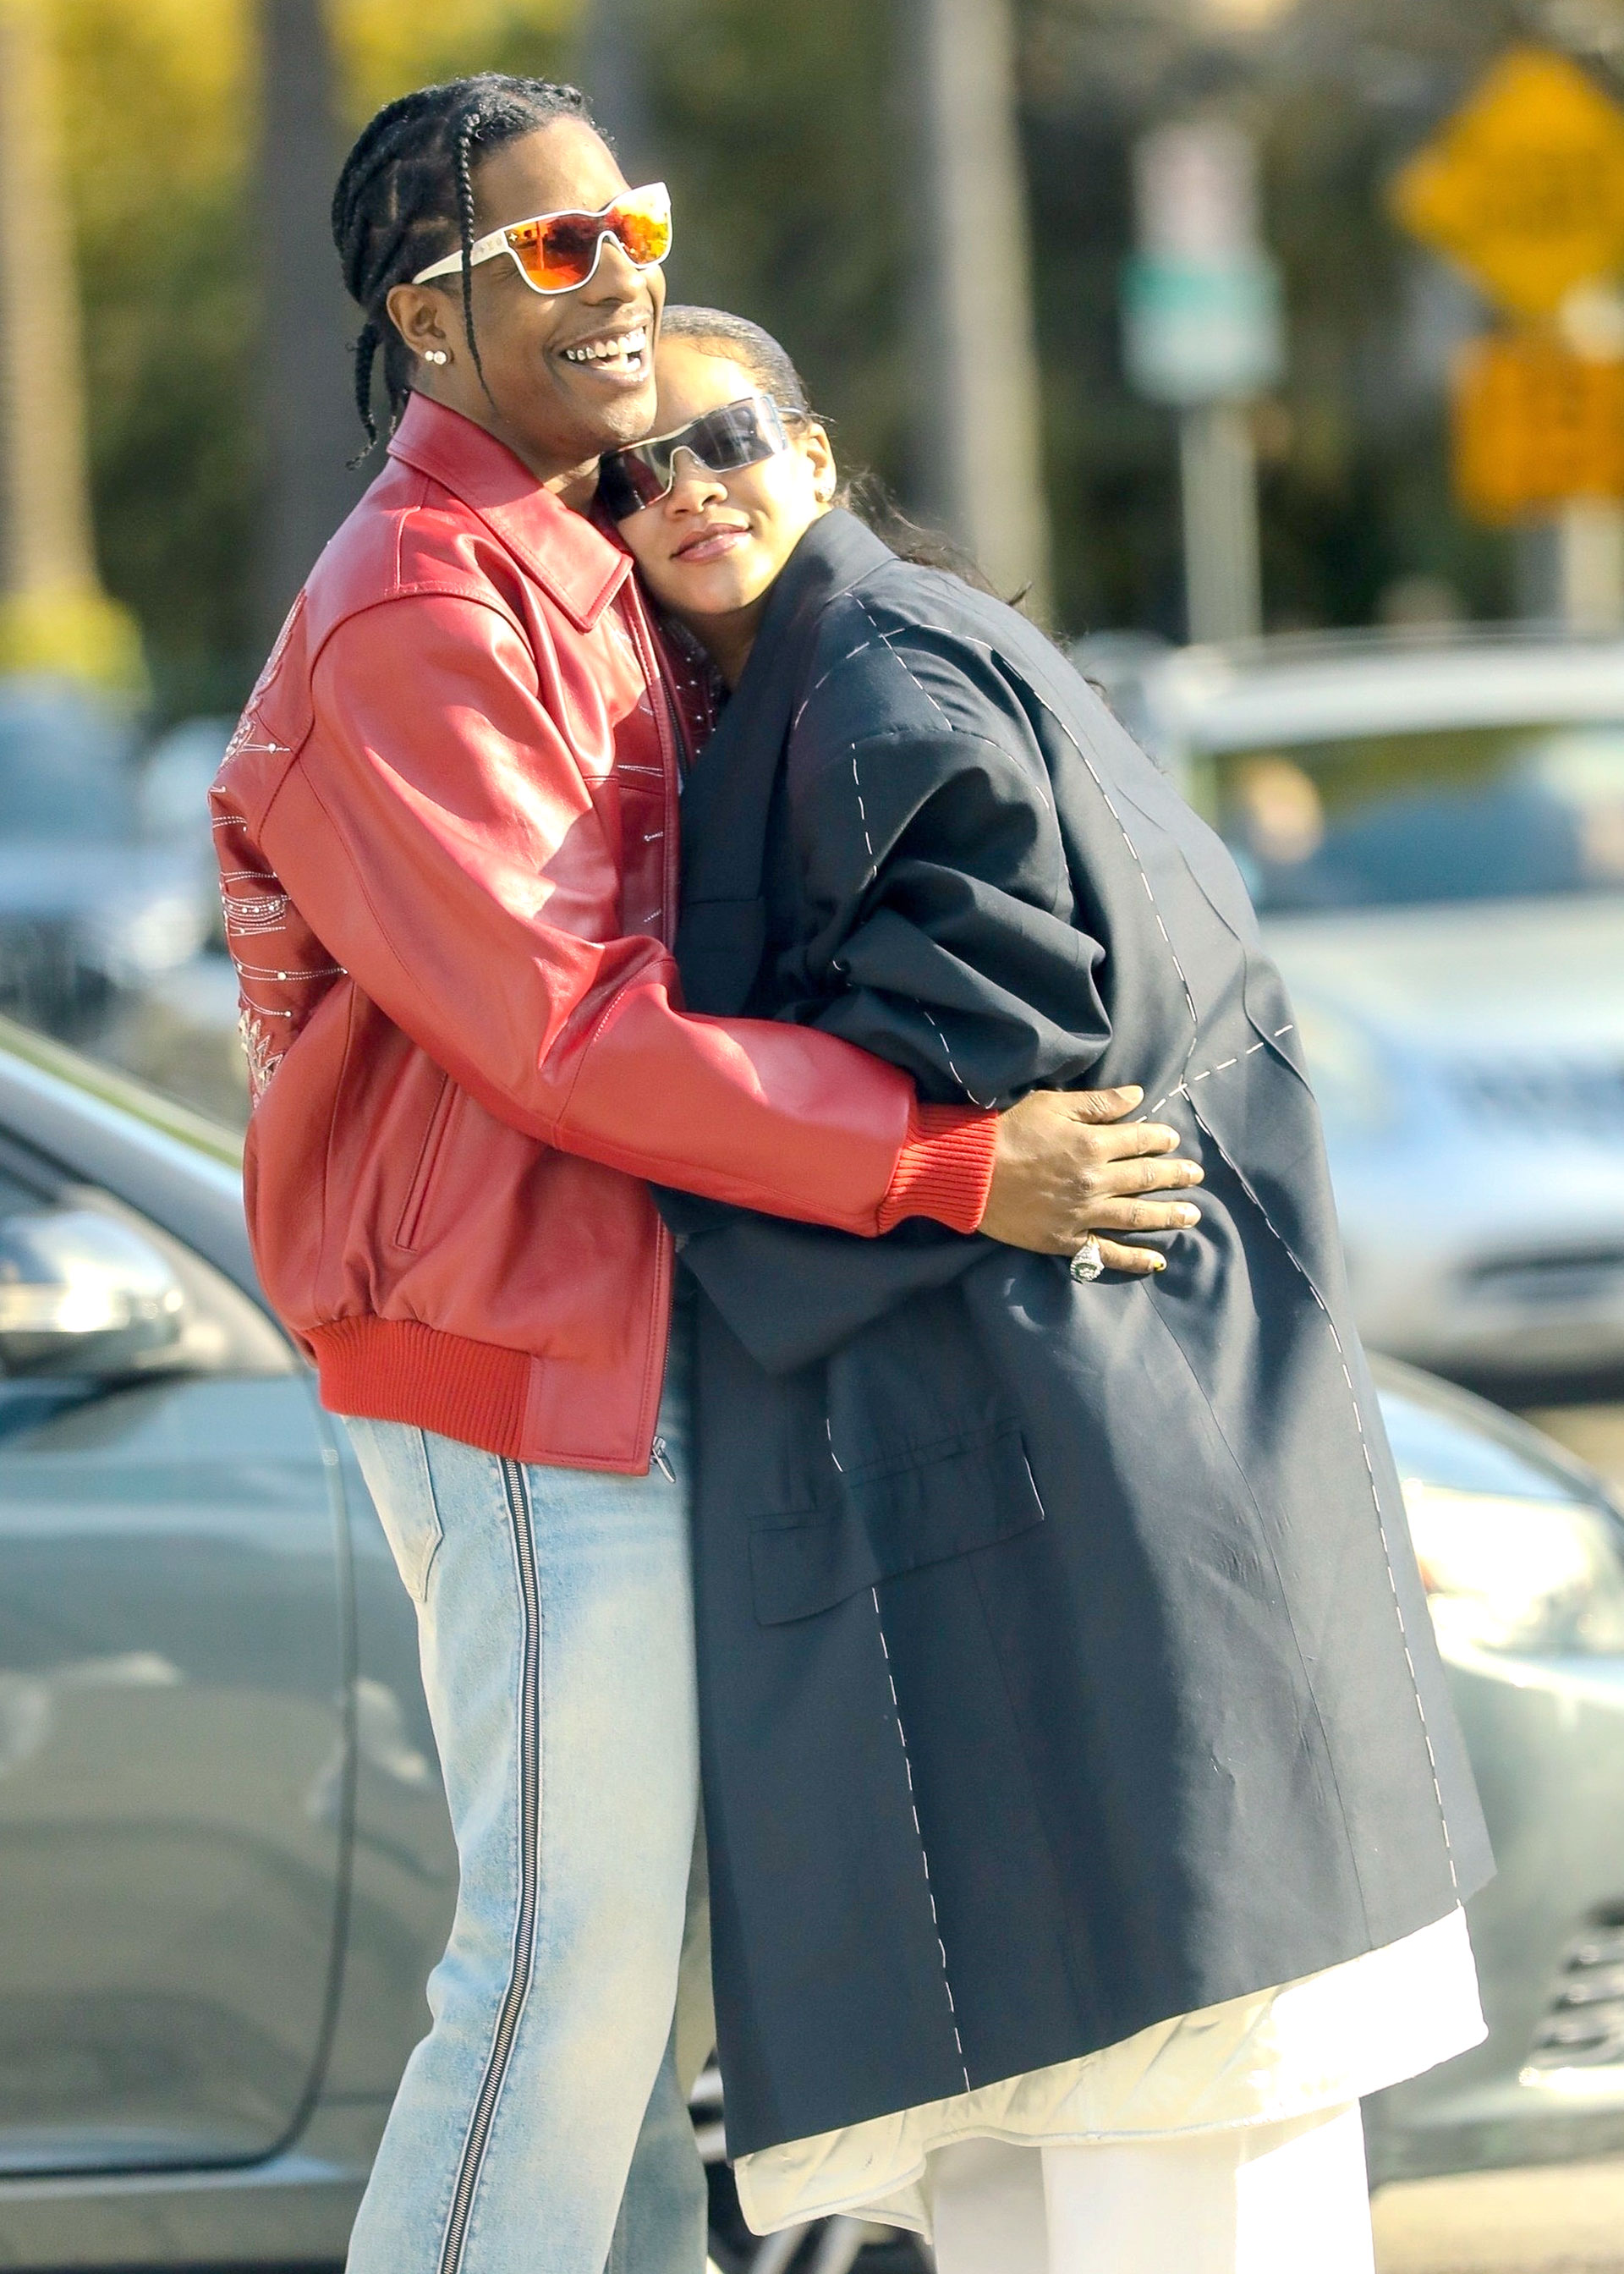 Romántico paseo. Rihanna y A$AP Rocky se mostraron muy cariñosos durante una salida de pareja en Los Ángeles. Fueron a comer a un exclusivo restaurante y luego caminaron por un paseo comercial. La artista está embarazada: espera su segundo bebé con el rapero